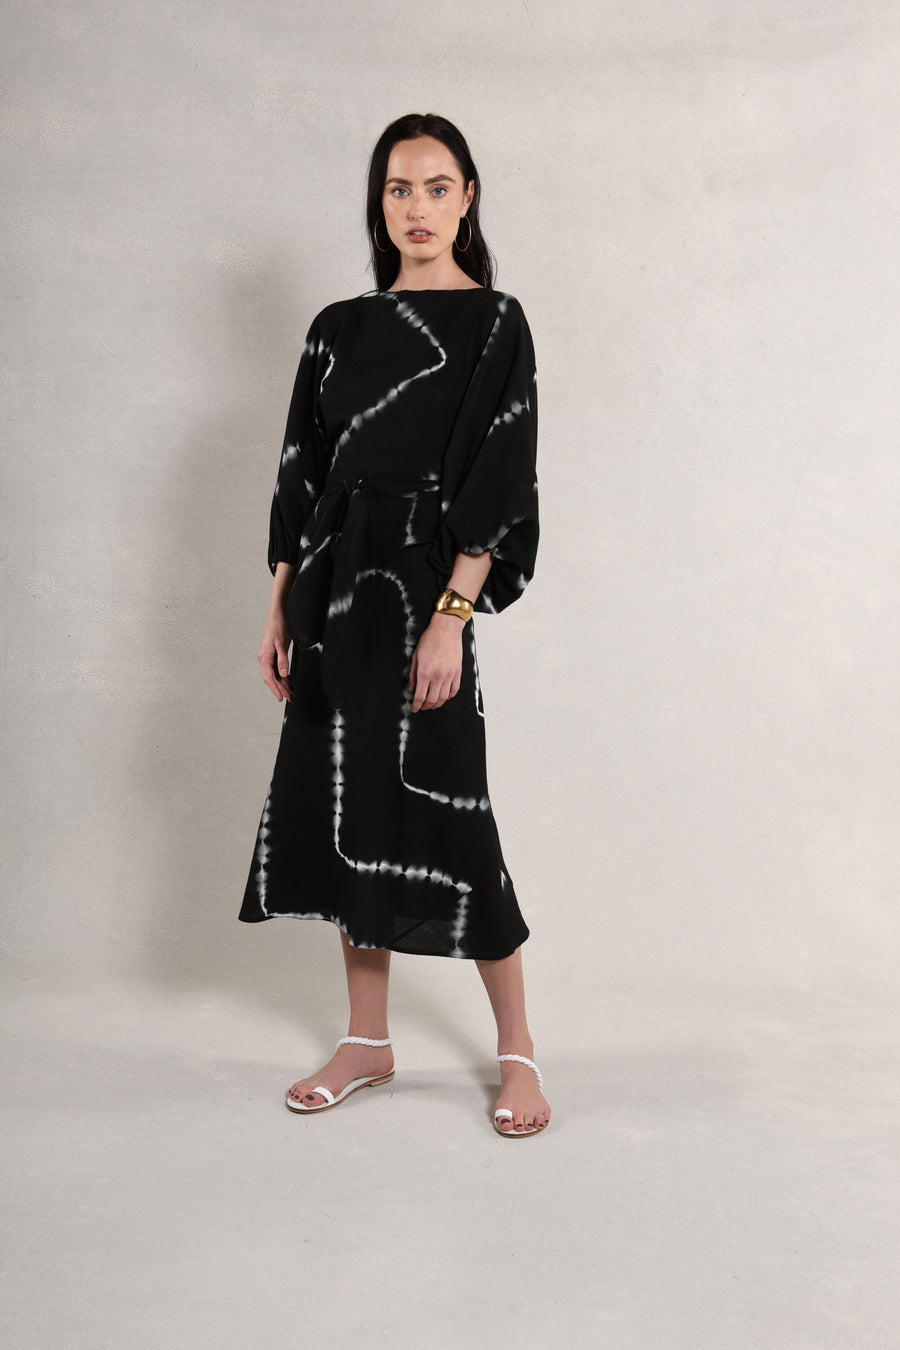 Candace Wrap Top & Slip Dress : Black & White Tie Dye Burlap